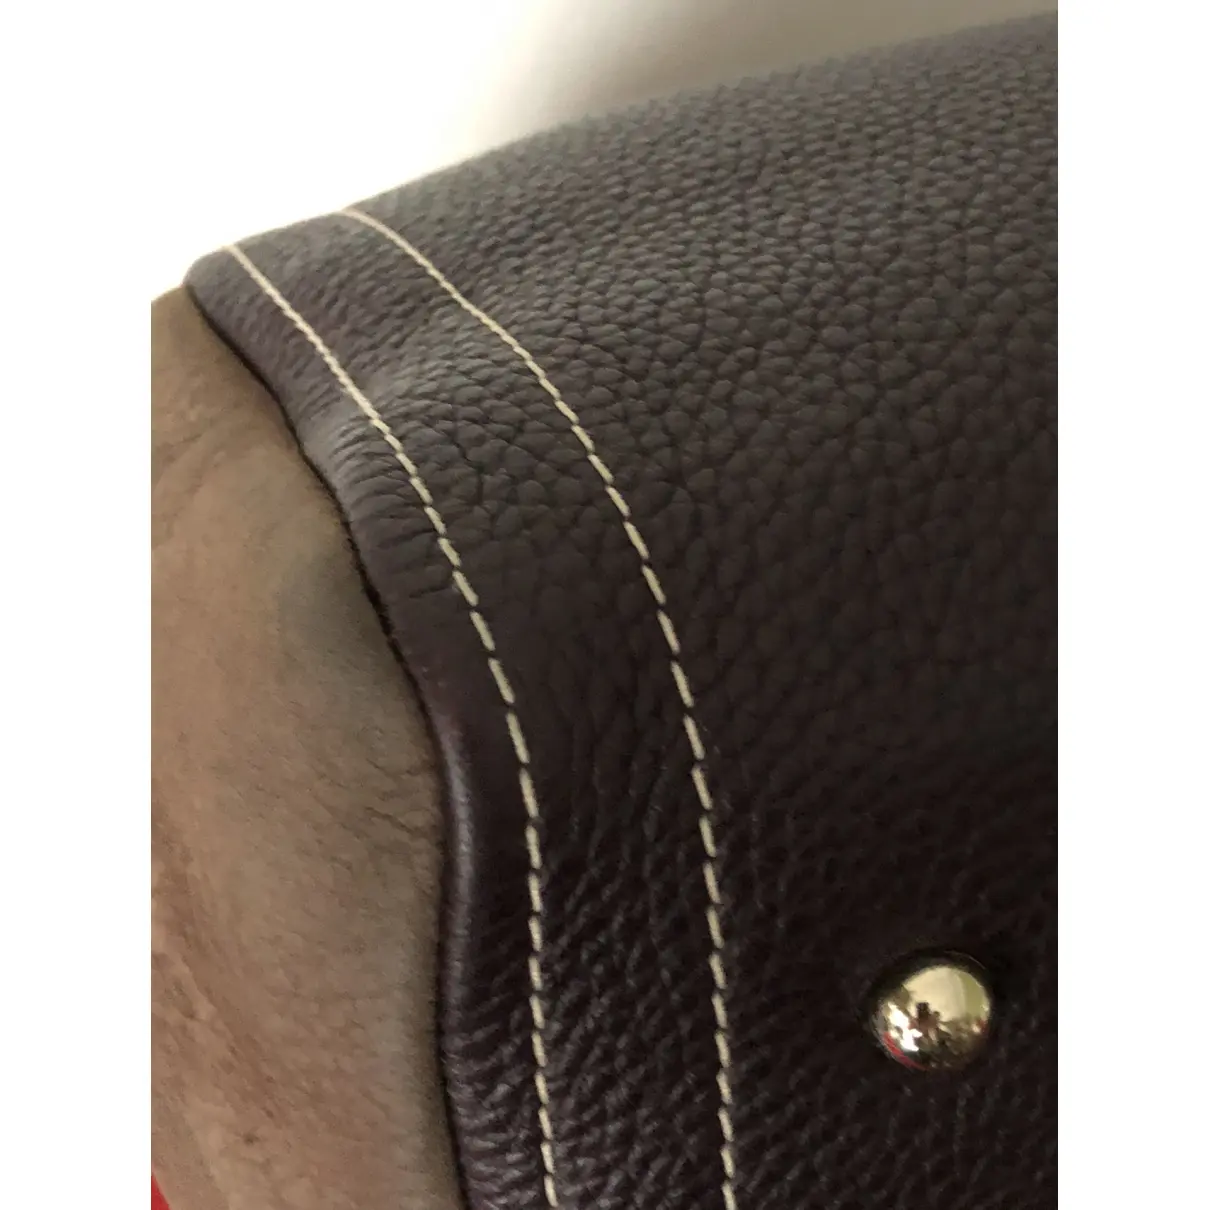 Leather handbag Carolina Herrera